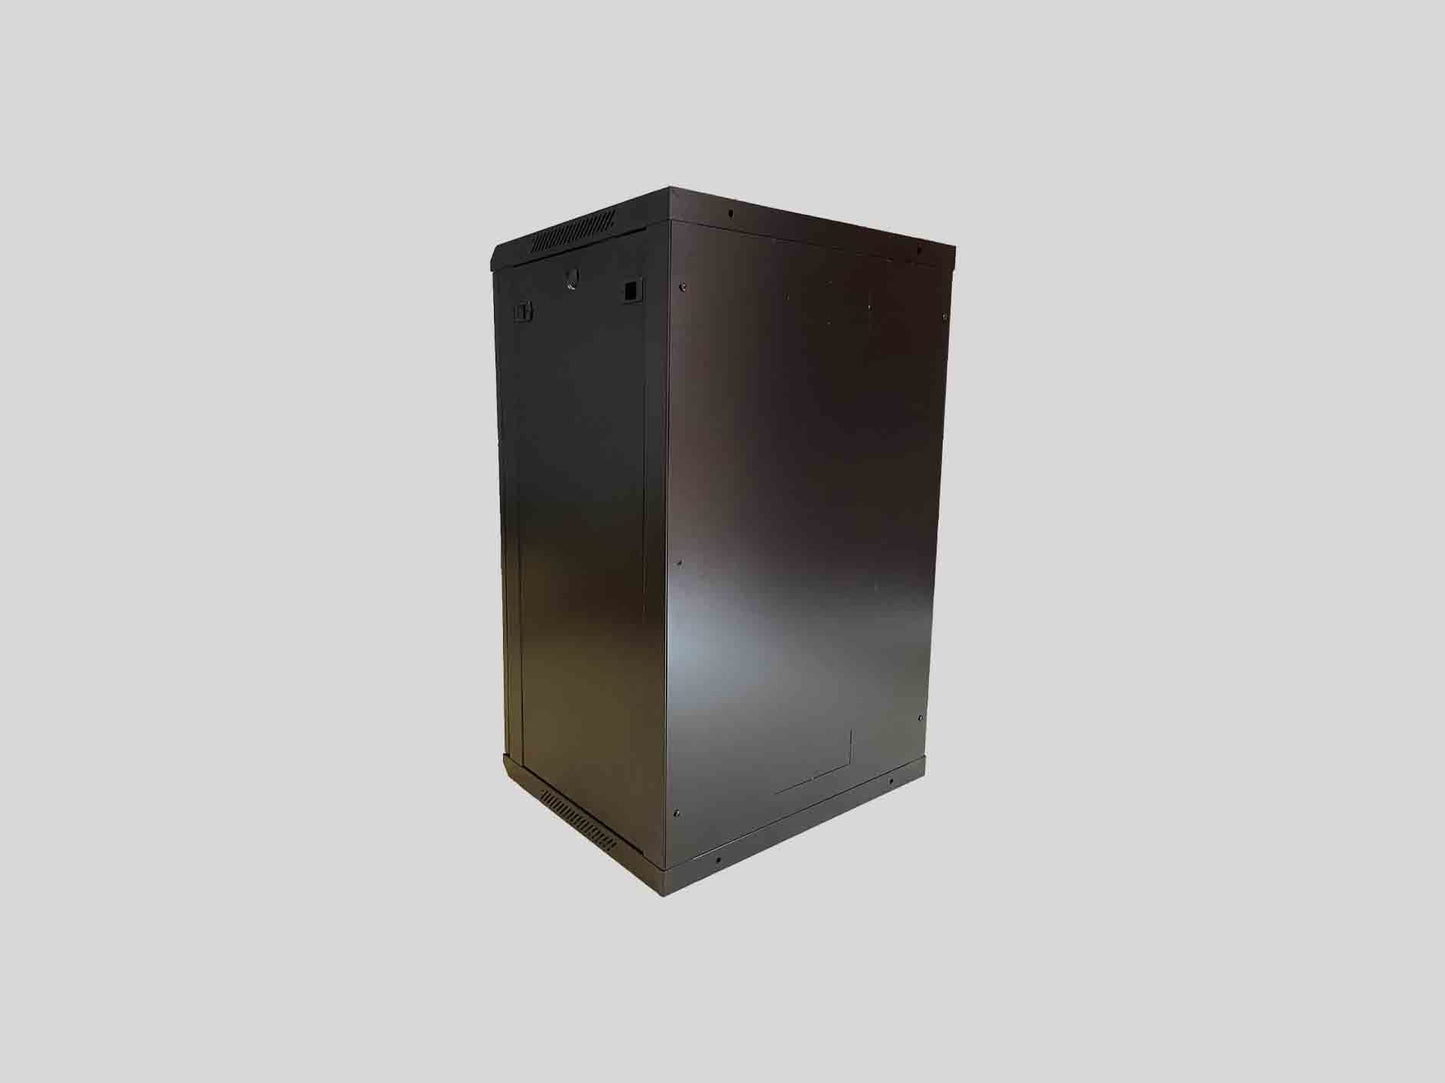 15RU 19'' Wall Mount Cabinet. W600mm x D450mm x H769mm